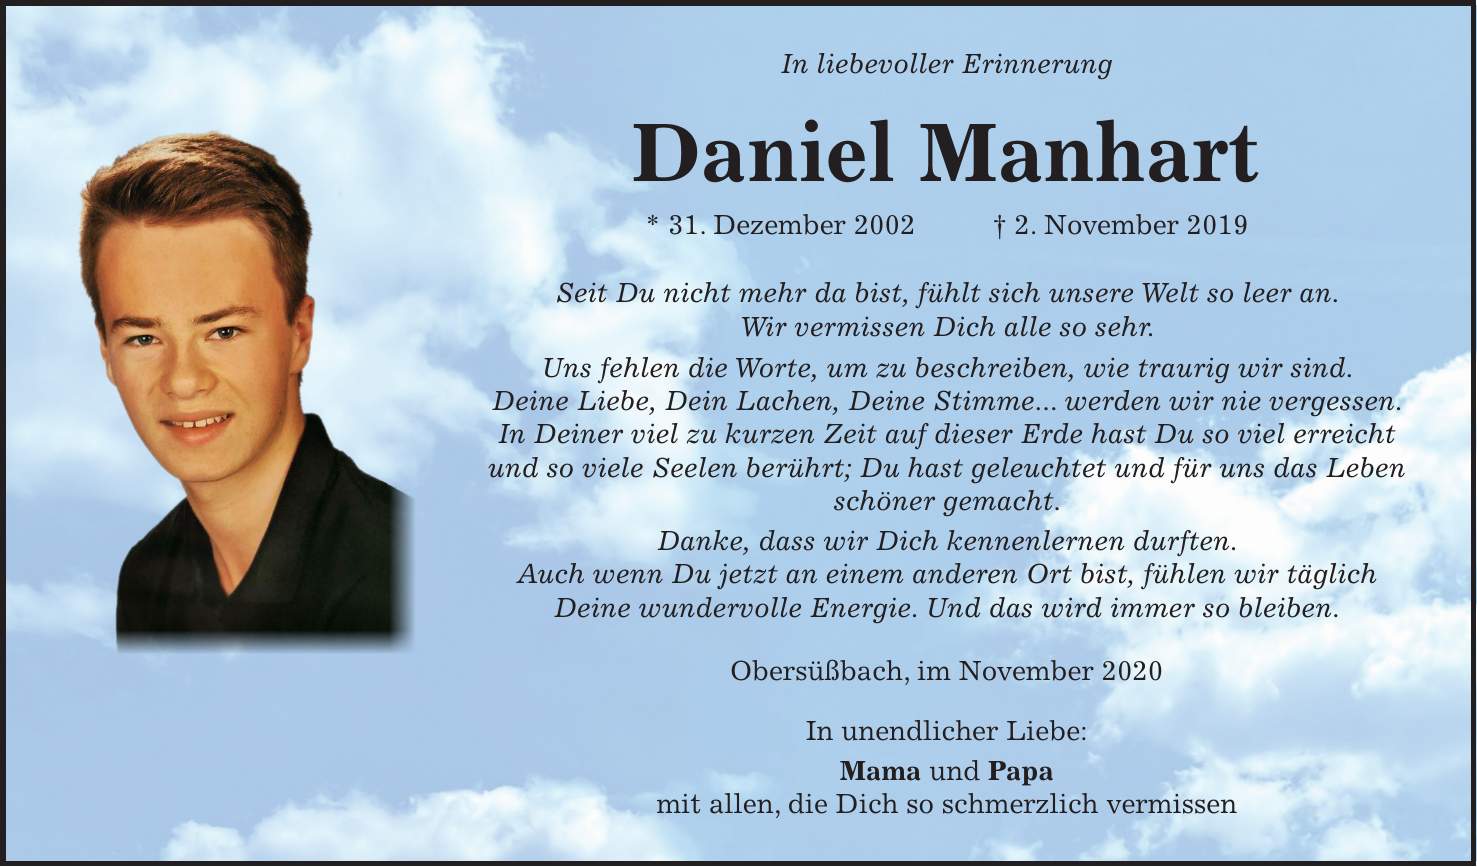 In liebevoller Erinnerung Daniel Manhart * 31. Dezember 2002 + 2. November 2019 Seit Du nicht mehr da bist, fühlt sich unsere Welt so leer an. Wir vermissen Dich alle so sehr. Uns fehlen die Worte, um zu beschreiben, wie traurig wir sind. Deine Liebe, Dein Lachen, Deine Stimme... werden wir nie vergessen. In Deiner viel zu kurzen Zeit auf dieser Erde hast Du so viel erreicht und so viele Seelen berührt; Du hast geleuchtet und für uns das Leben schöner gemacht. Danke, dass wir Dich kennenlernen durften. Auch wenn Du jetzt an einem anderen Ort bist, fühlen wir täglich Deine wundervolle Energie. Und das wird immer so bleiben. Obersüßbach, im November 2020 In unendlicher Liebe: Mama und Papa mit allen, die Dich so schmerzlich vermissen